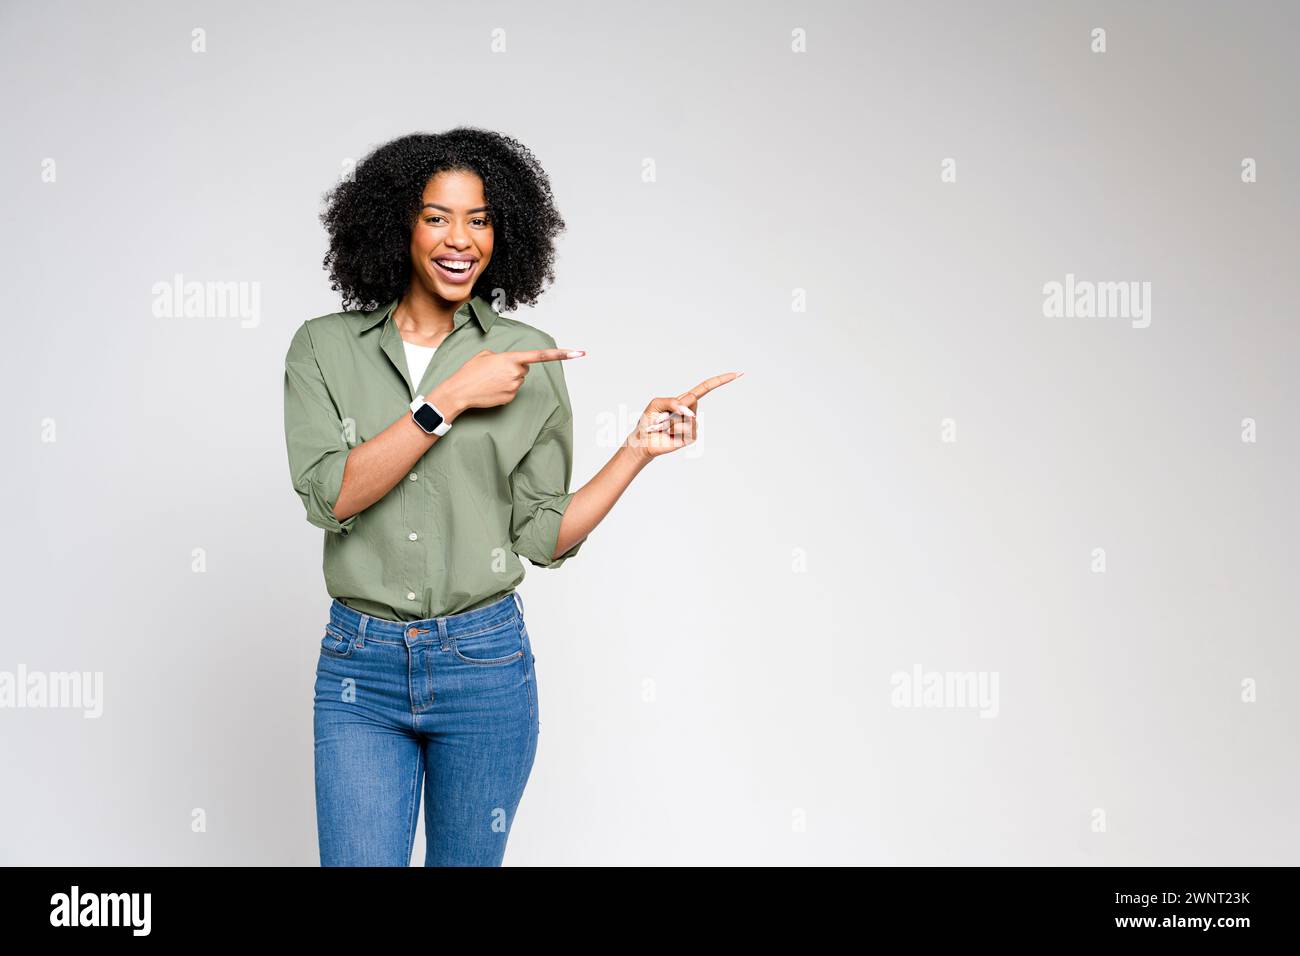 Mit einer einladenden Präsentation zeigt diese afroamerikanische Frau in einem elegant-lässigen Outfit auf ein unsichtbares Produkt, das sich perfekt für Werbung und Werbung eignet. Stockfoto